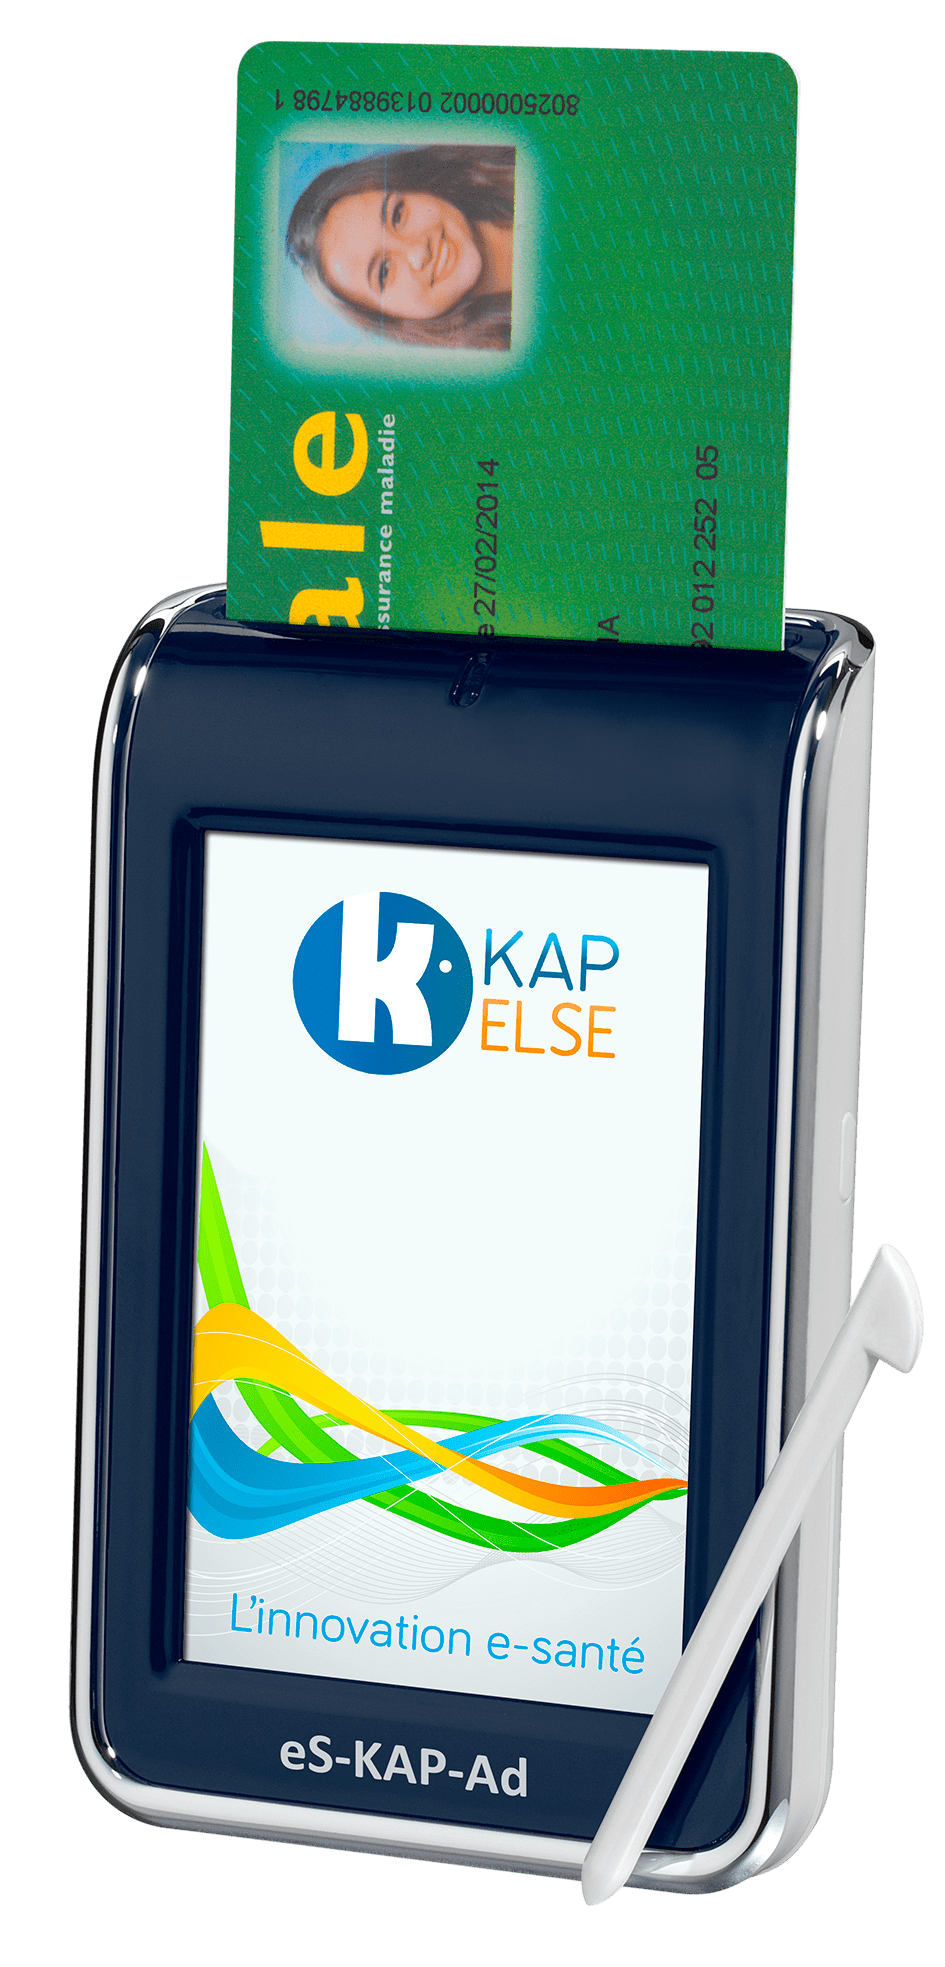 Kapelse eS-KAP-Ad : Lecteur de cartes vitales portable